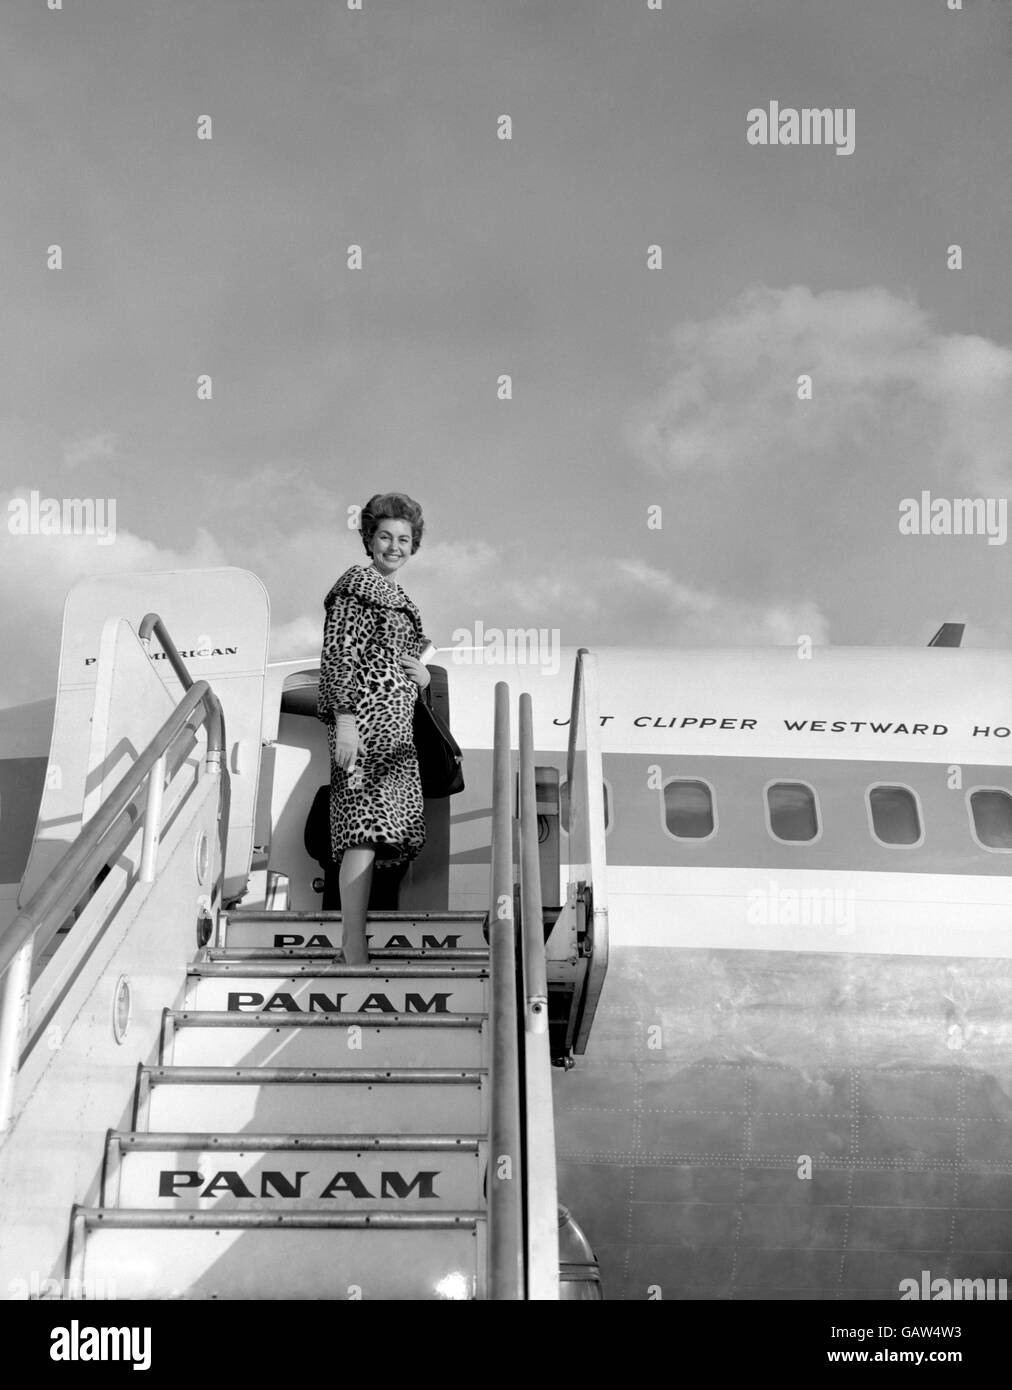 In un cappotto di pelle di leopardo e senza covoni, l'attrice Cyd Charisse si trova oggi (mercoledì) a far parte di un Clipper a getto pan americano all'aeroporto di Londra, sulla sua strada per Hollywood dopo tre mesi di riprese nel Regno Unito. Foto Stock